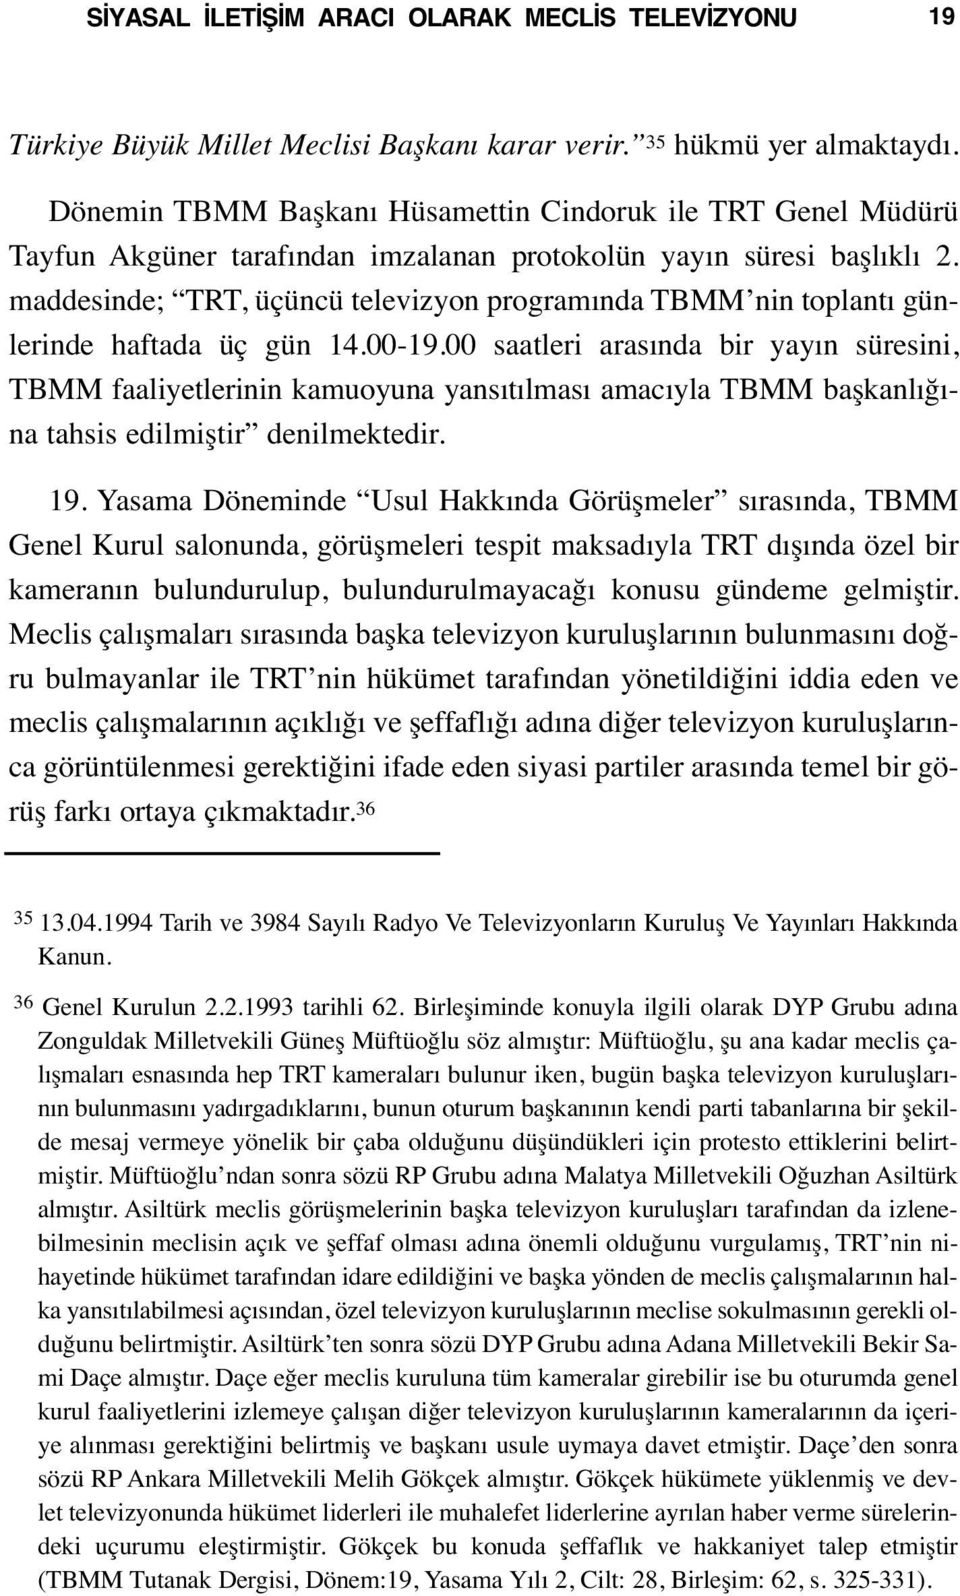 maddesinde; TRT, üçüncü televizyon programında TBMM nin toplantı günlerinde haftada üç gün 14.00-19.